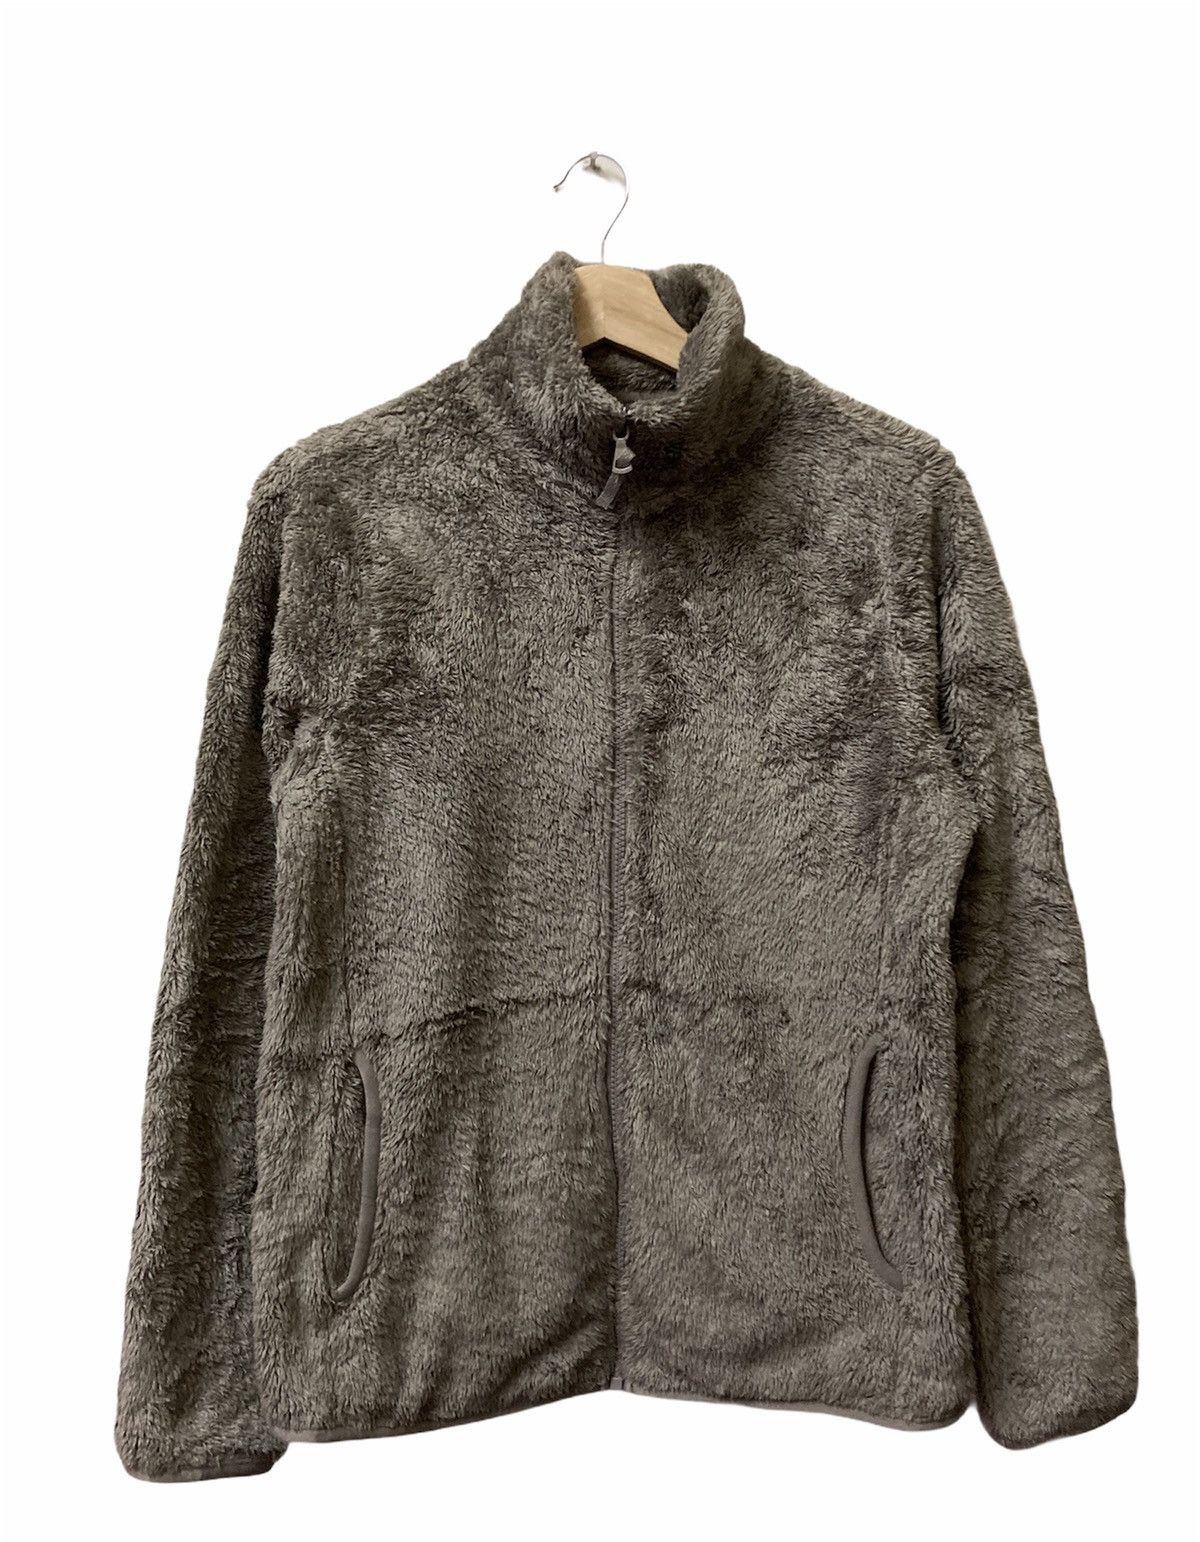 Uniqlo Fluffy Yarn Fleece Full Zipper Long Sleeve Jacket - 1